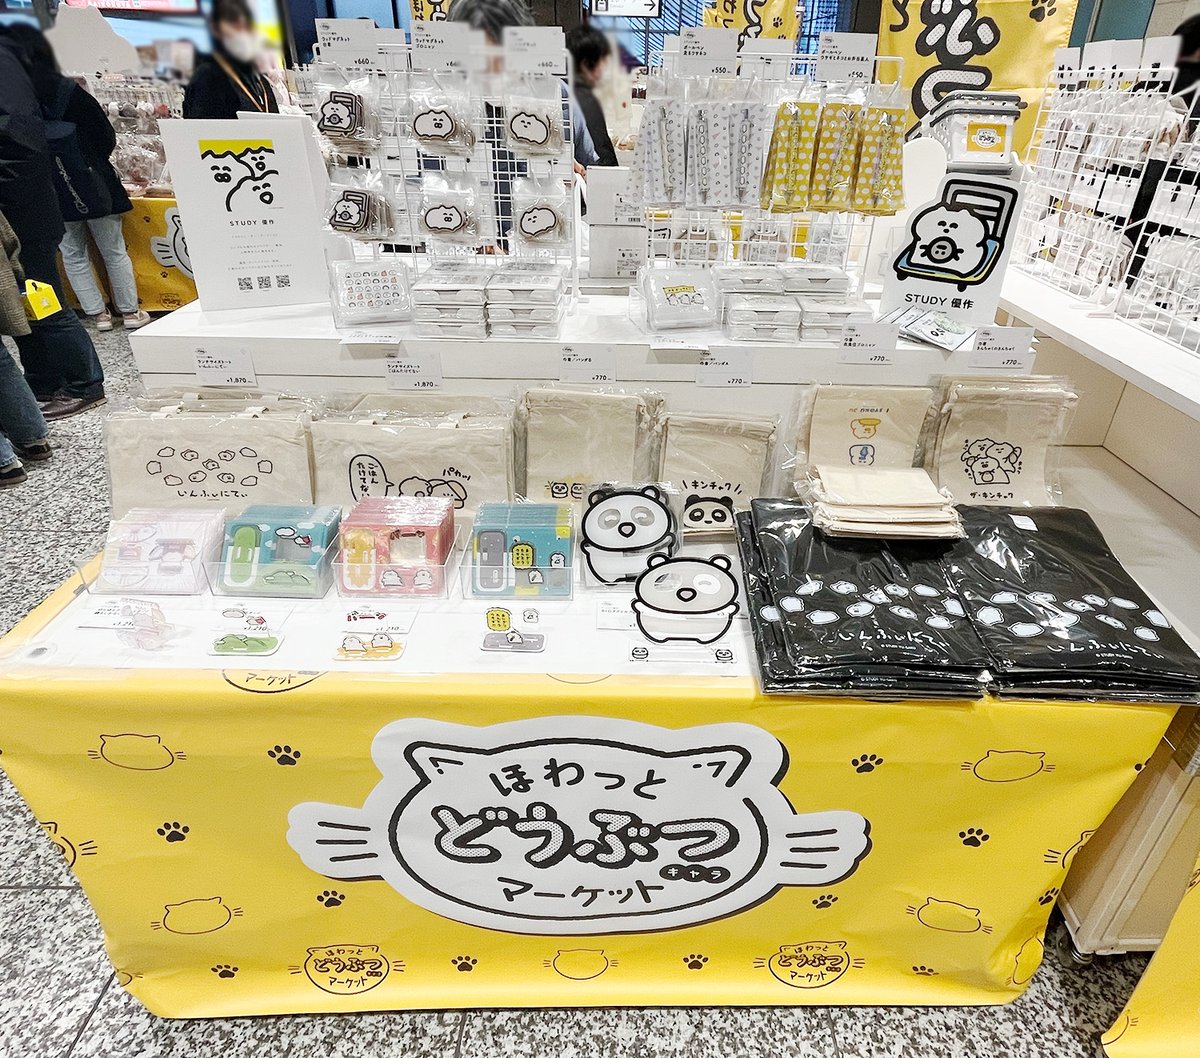 【東京で合同グッズイベント開催中です!】 先日より、大宮駅西口イベントスペースにて 「ほわっとどうぶつマーケット」が開催中でございます  動物のグッズを中心に色々な作家さんのグッズが展示販売中でございます!  お近くへお越しの際はぜひぜひ!